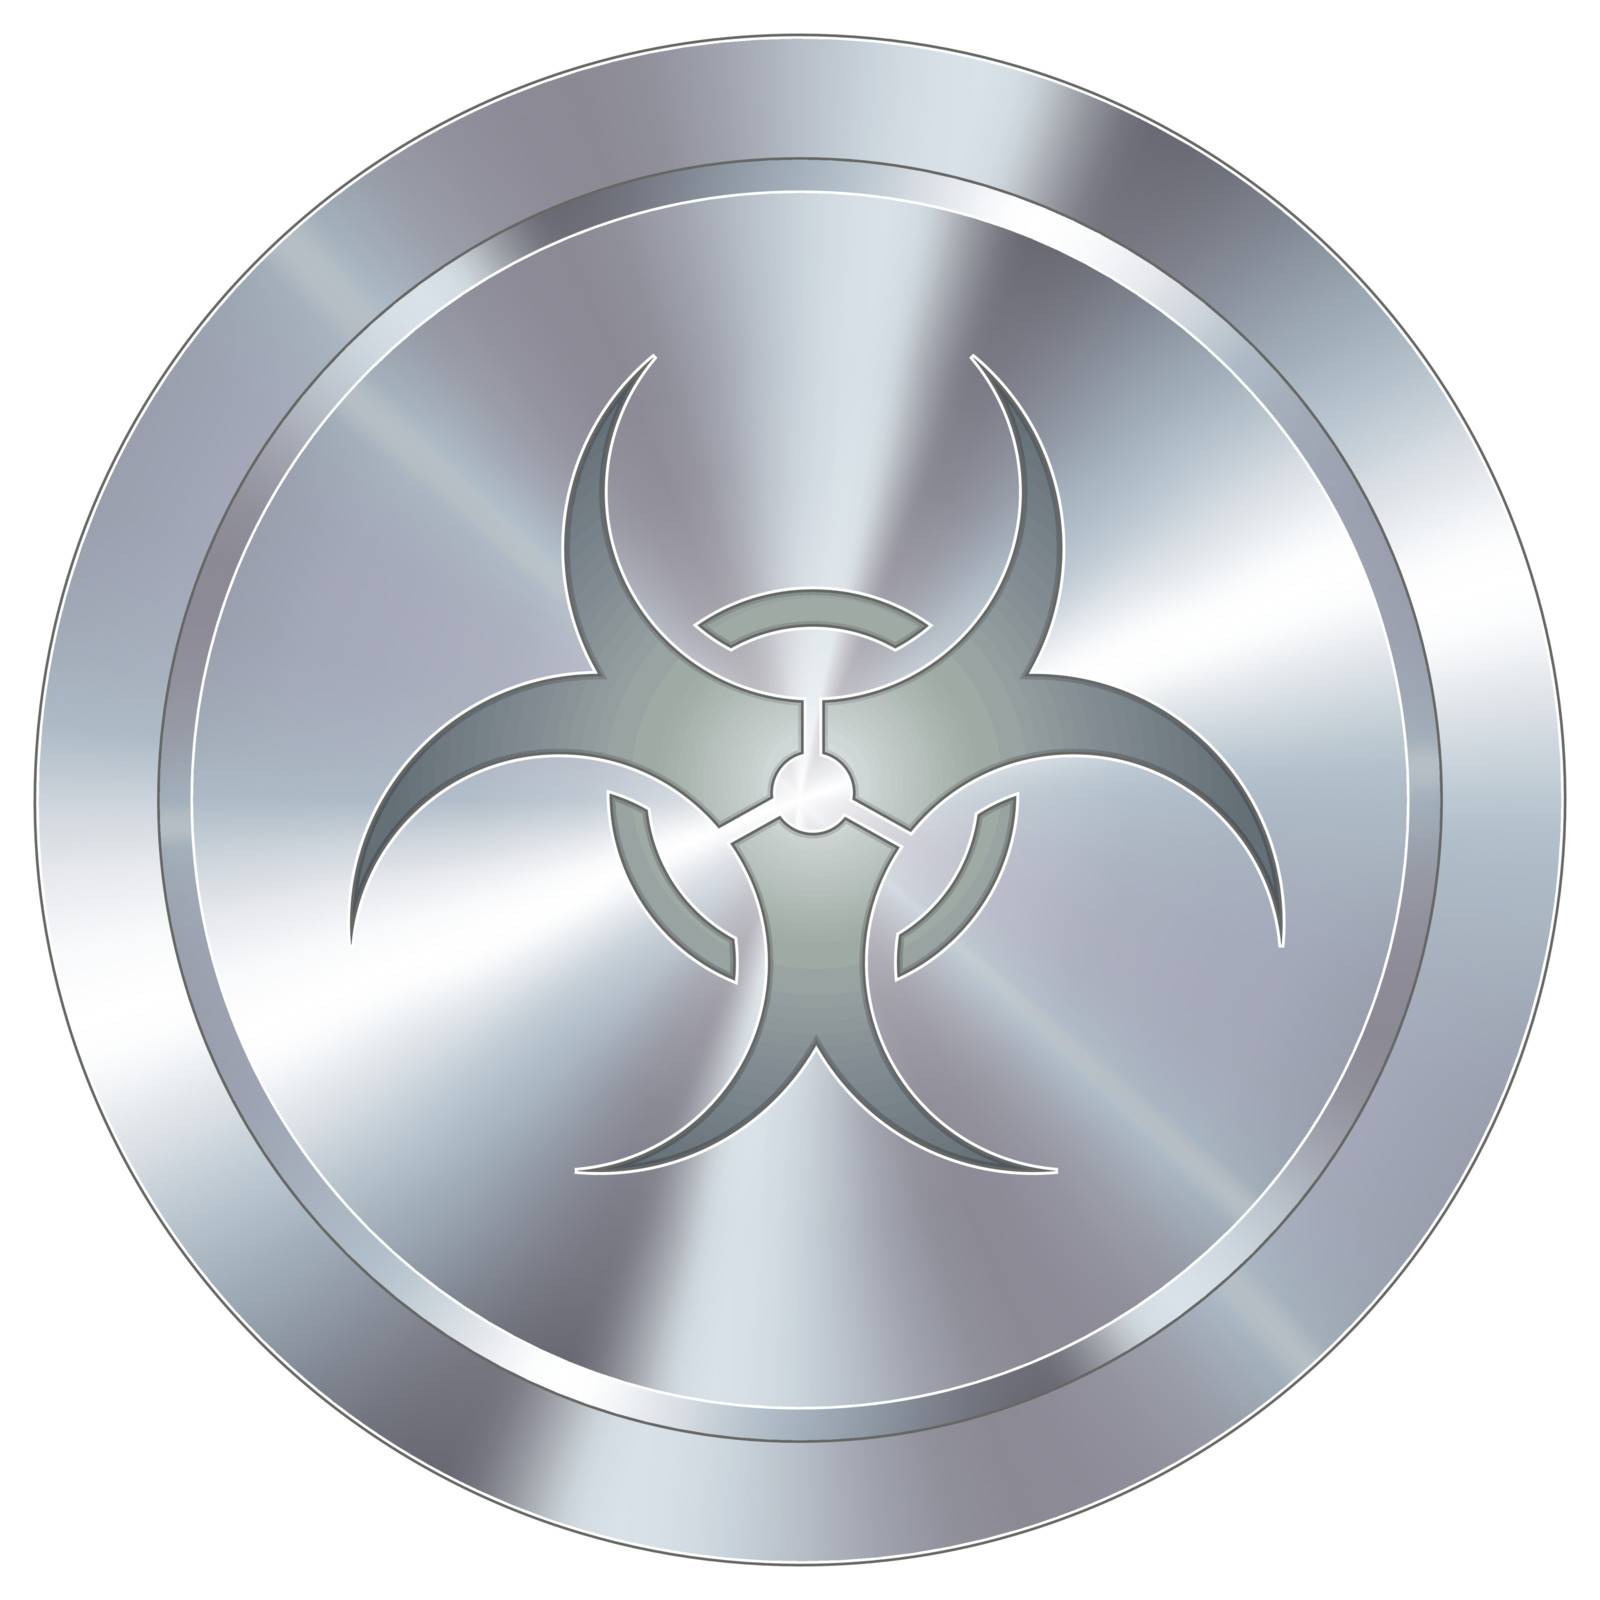 Biohazard warning icon on round stainless steel modern industrial button